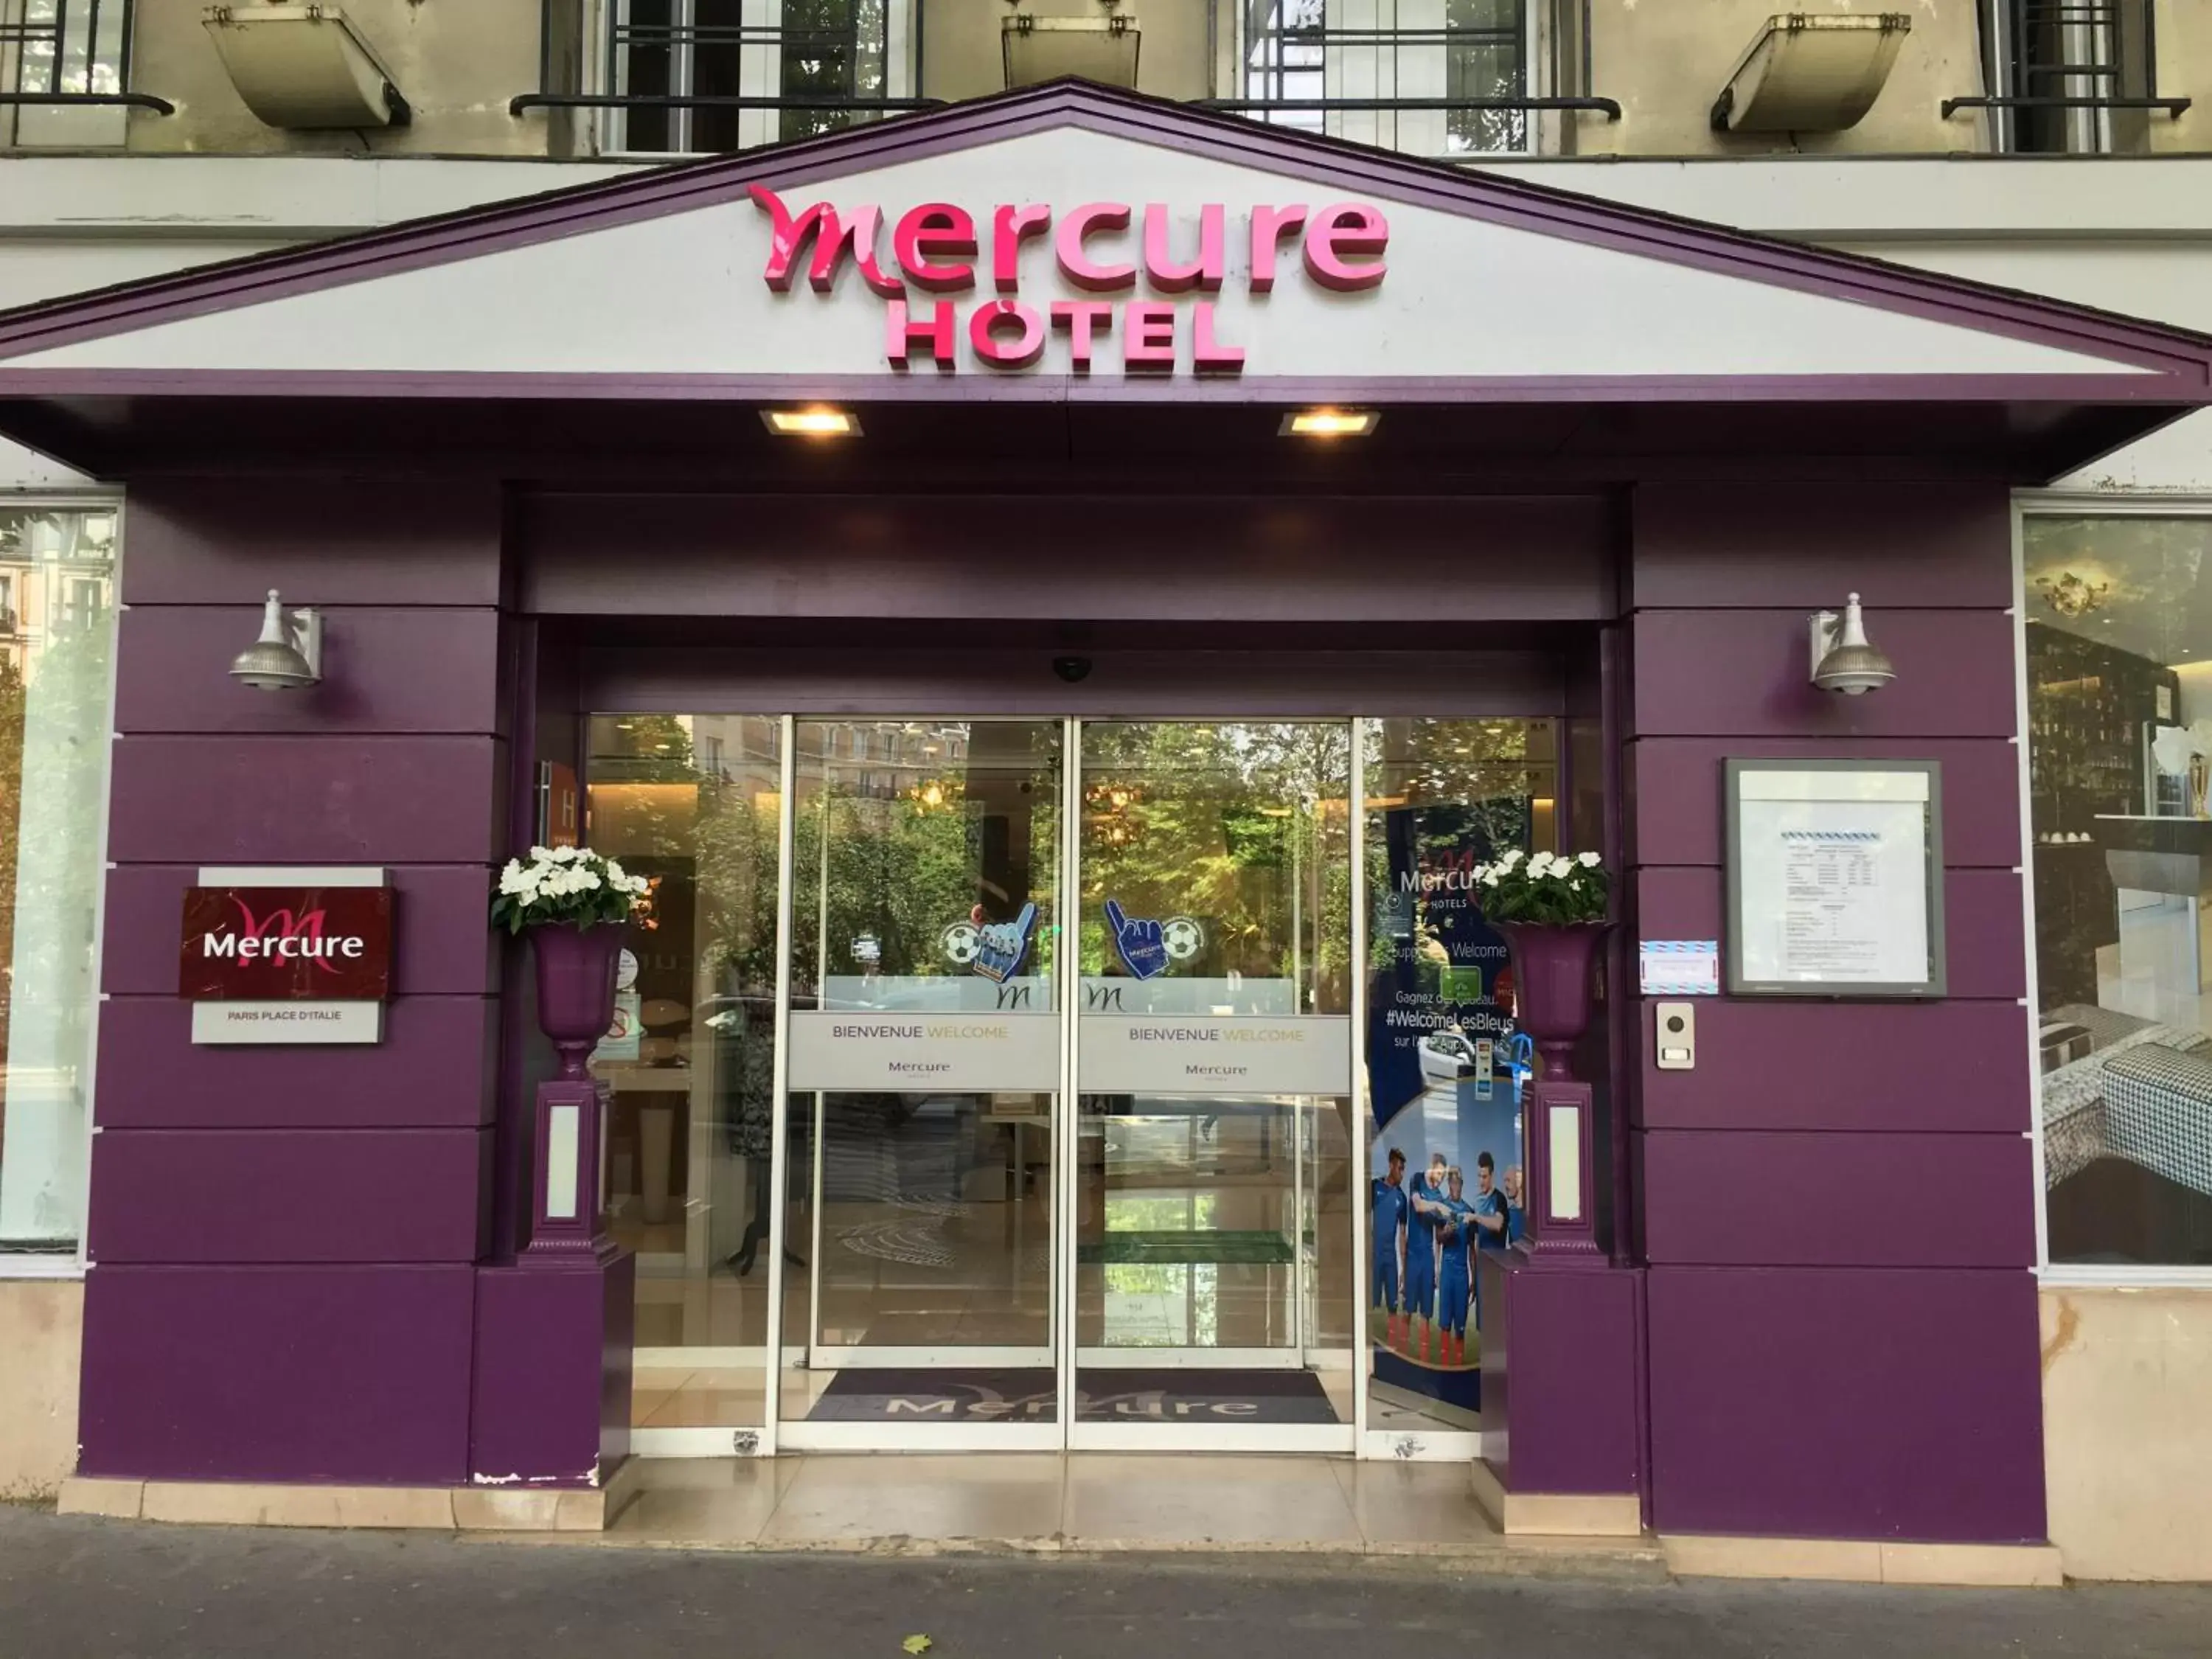 Facade/Entrance in Mercure Paris Place d'Italie